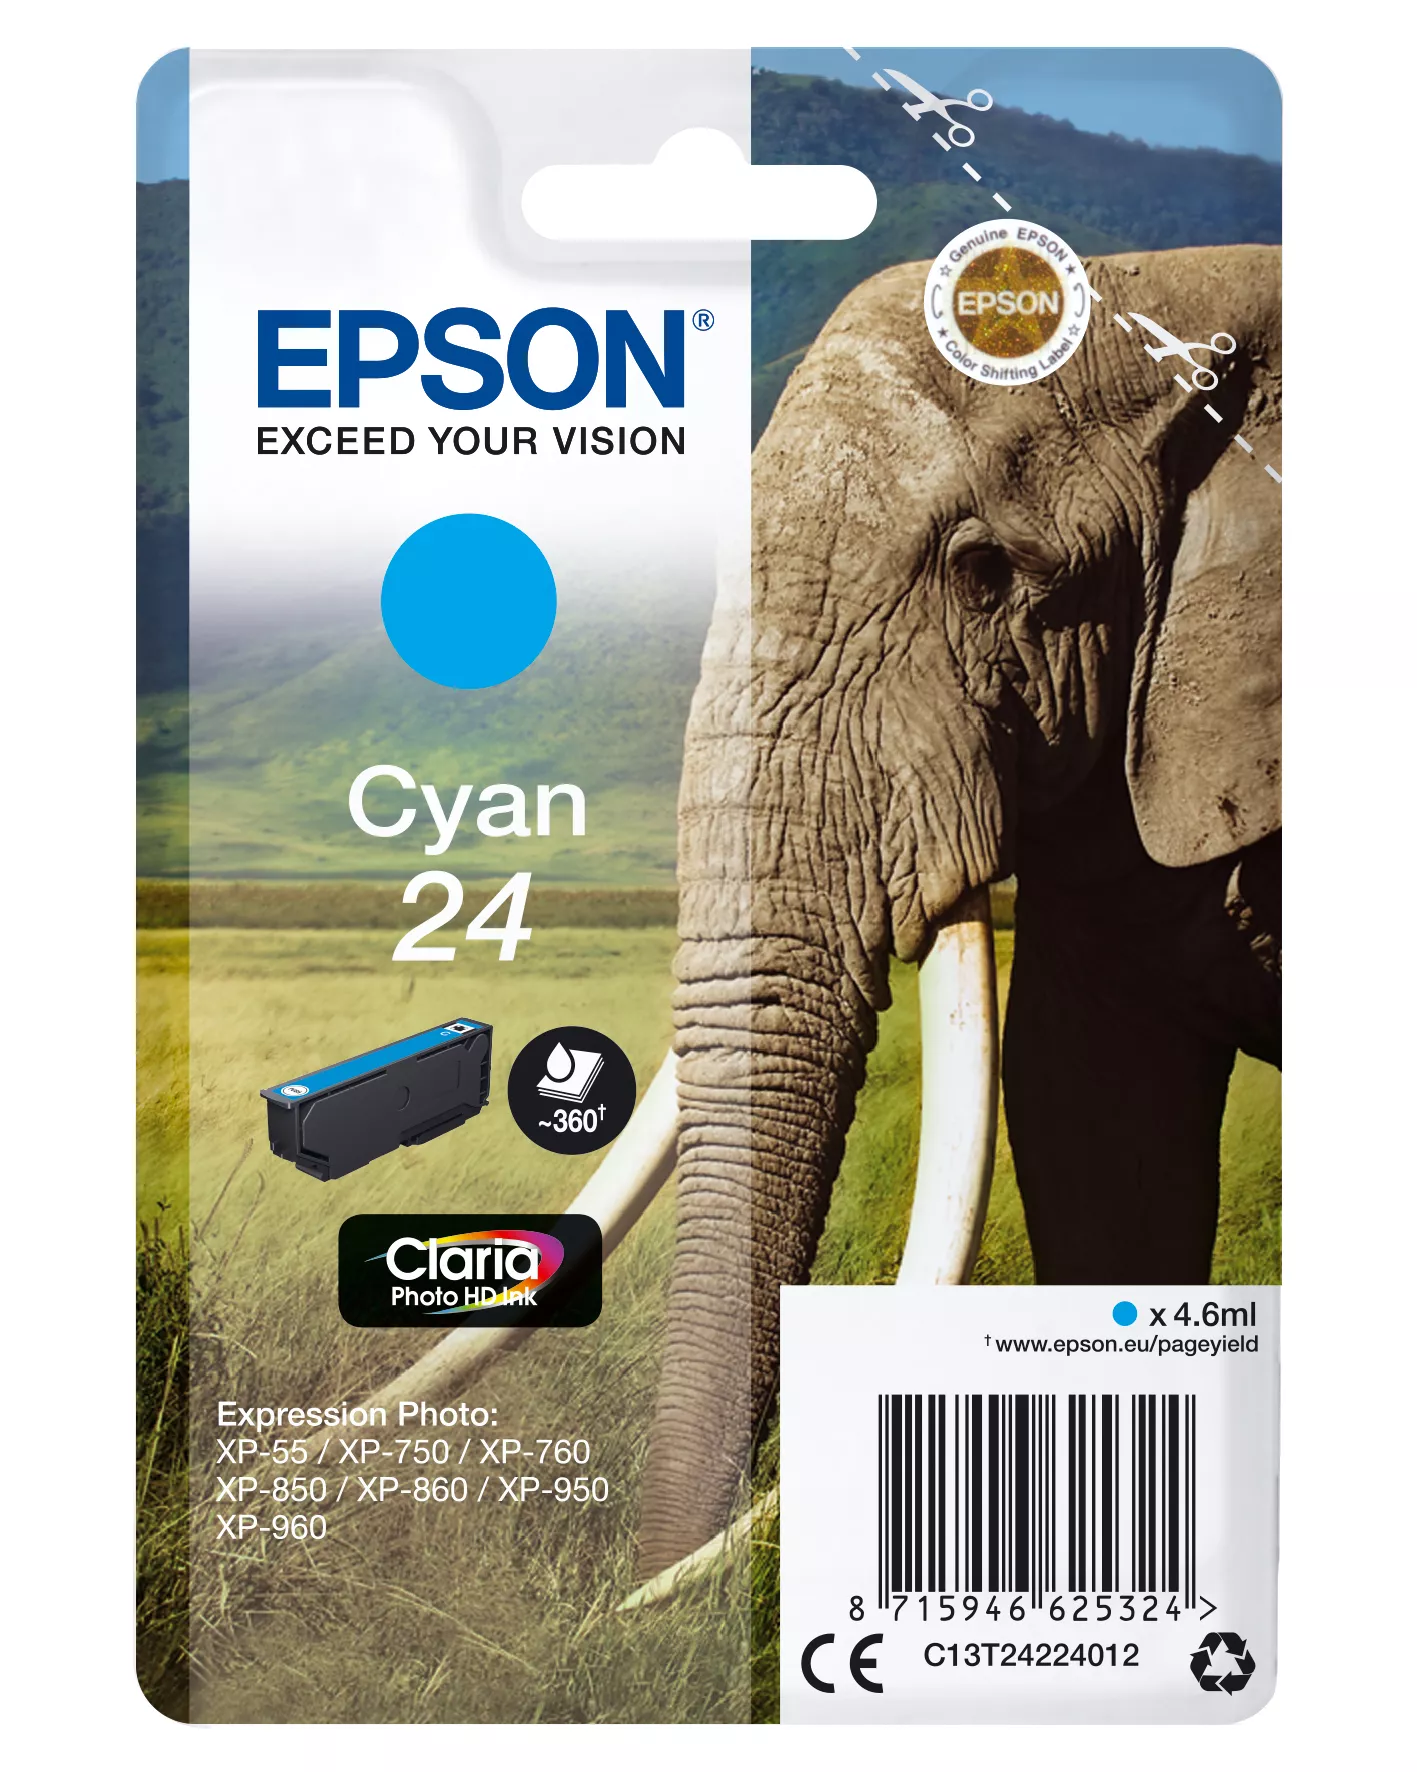 Achat EPSON 24 cartouche d encre cyan capacité standard 4.6ml sur hello RSE